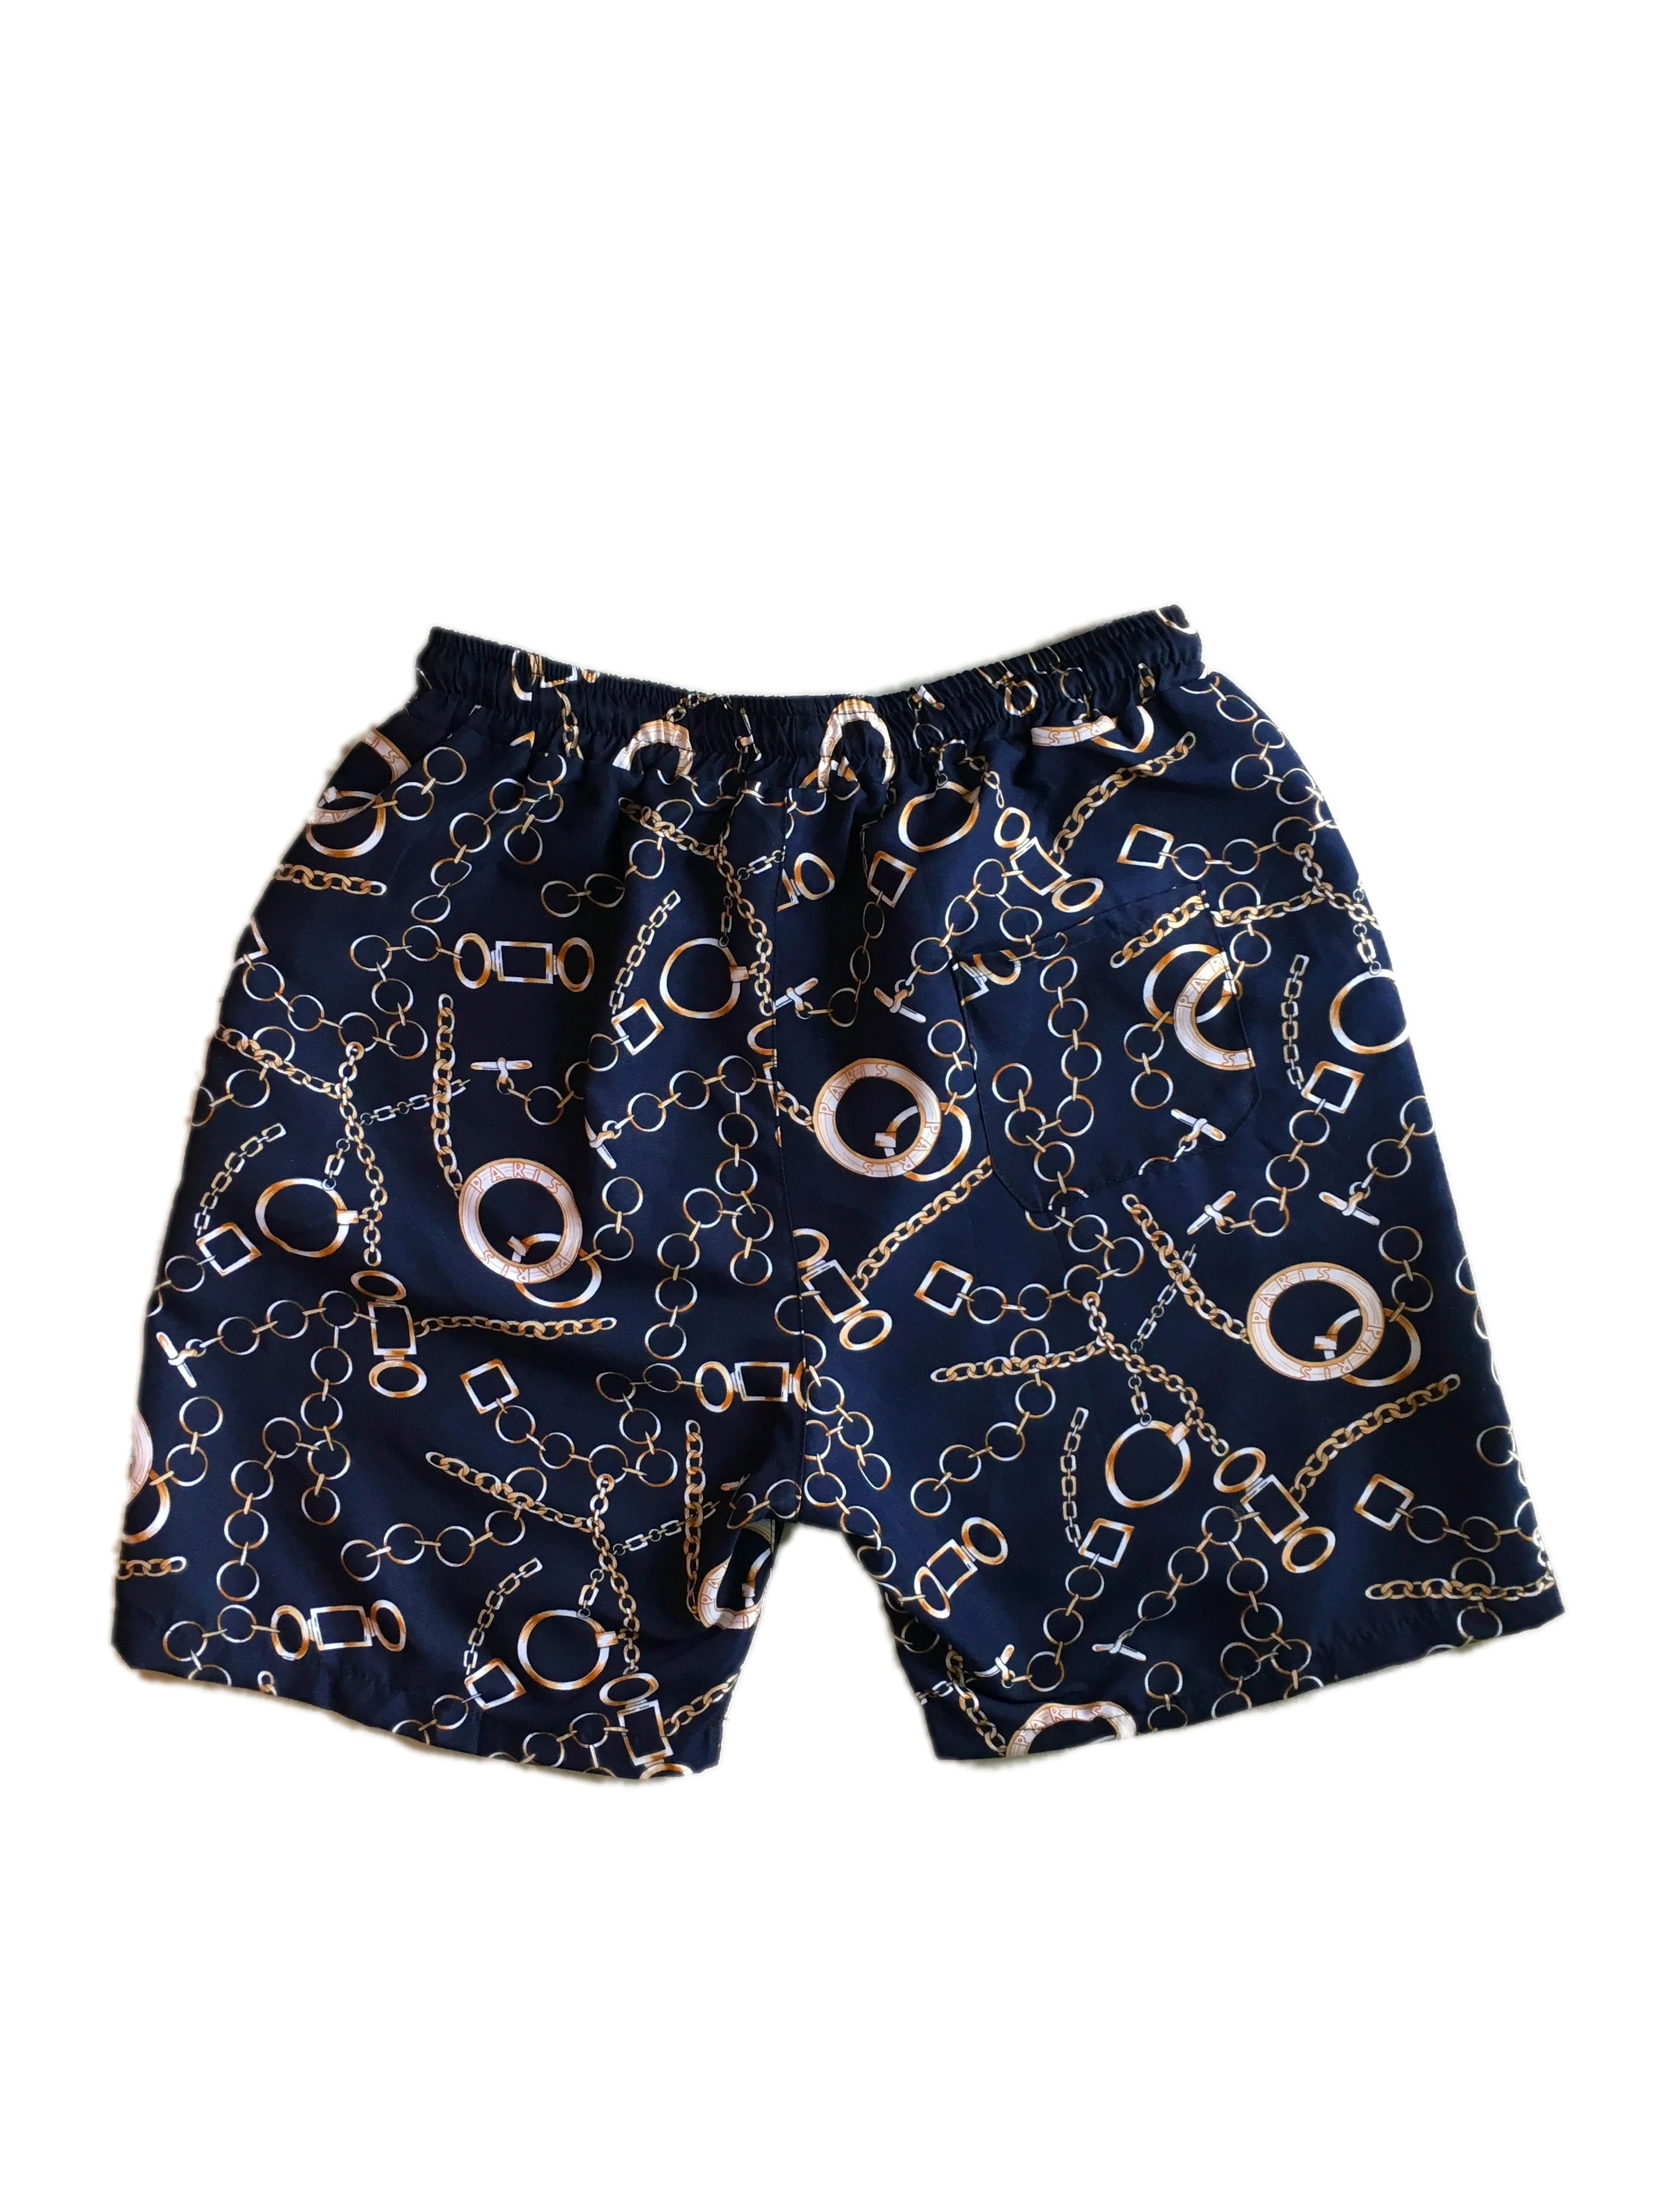 Мужские повседневные короткие штаны летние пляжные Гавайские шорты с золотой цепочкой темно-синие шорты для мужчин Бермуды мужские деловые